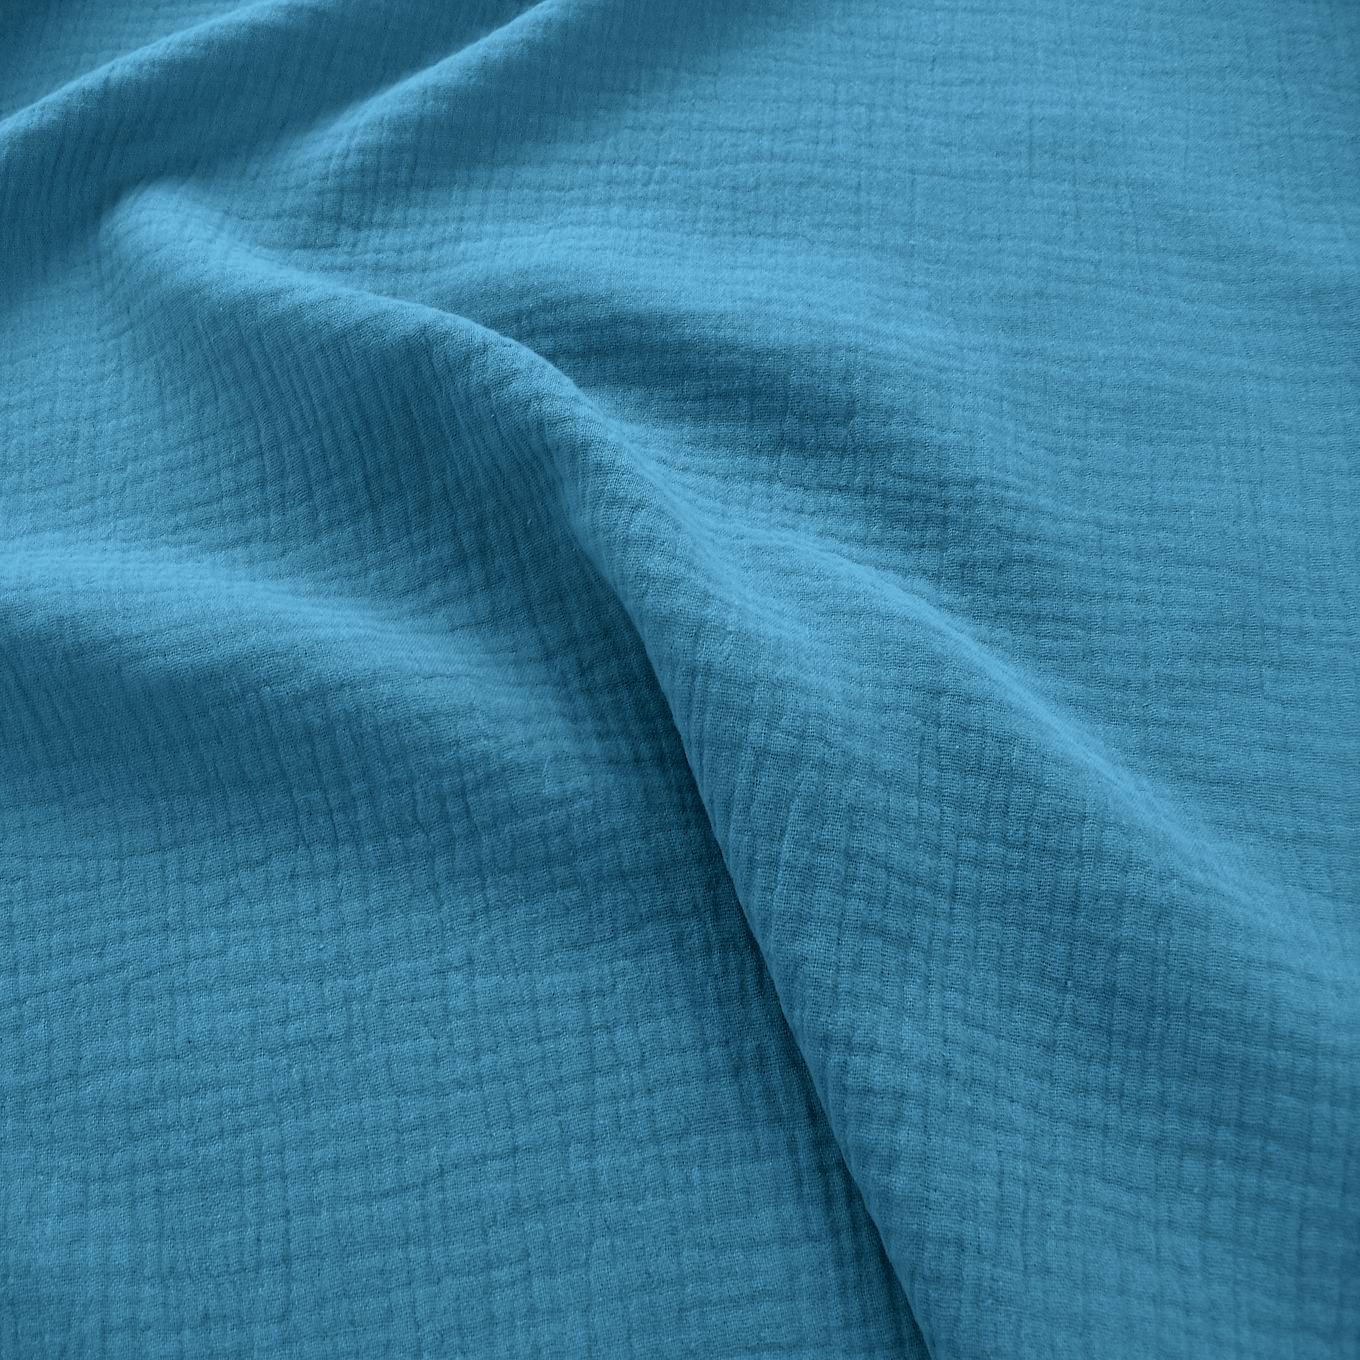 blauer Musselin/Gauze weicher Baumwollstoff zweilagig Kleider-Blusenstoff